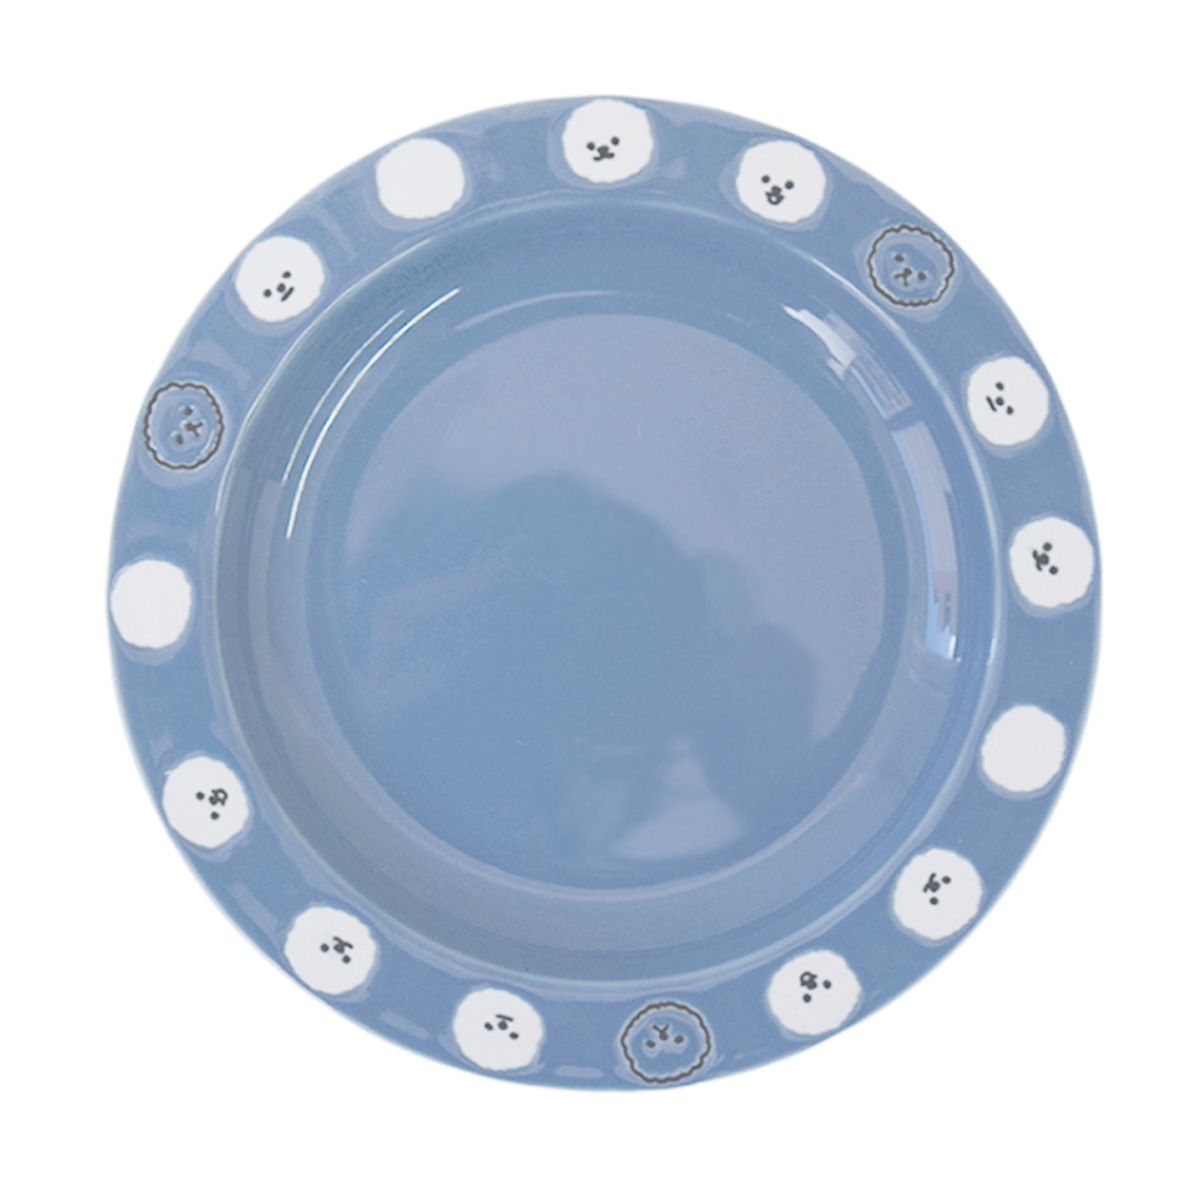 リムプレート 皿 丸皿もこ犬リム プレート ブルー 約16cm×2cm 350996